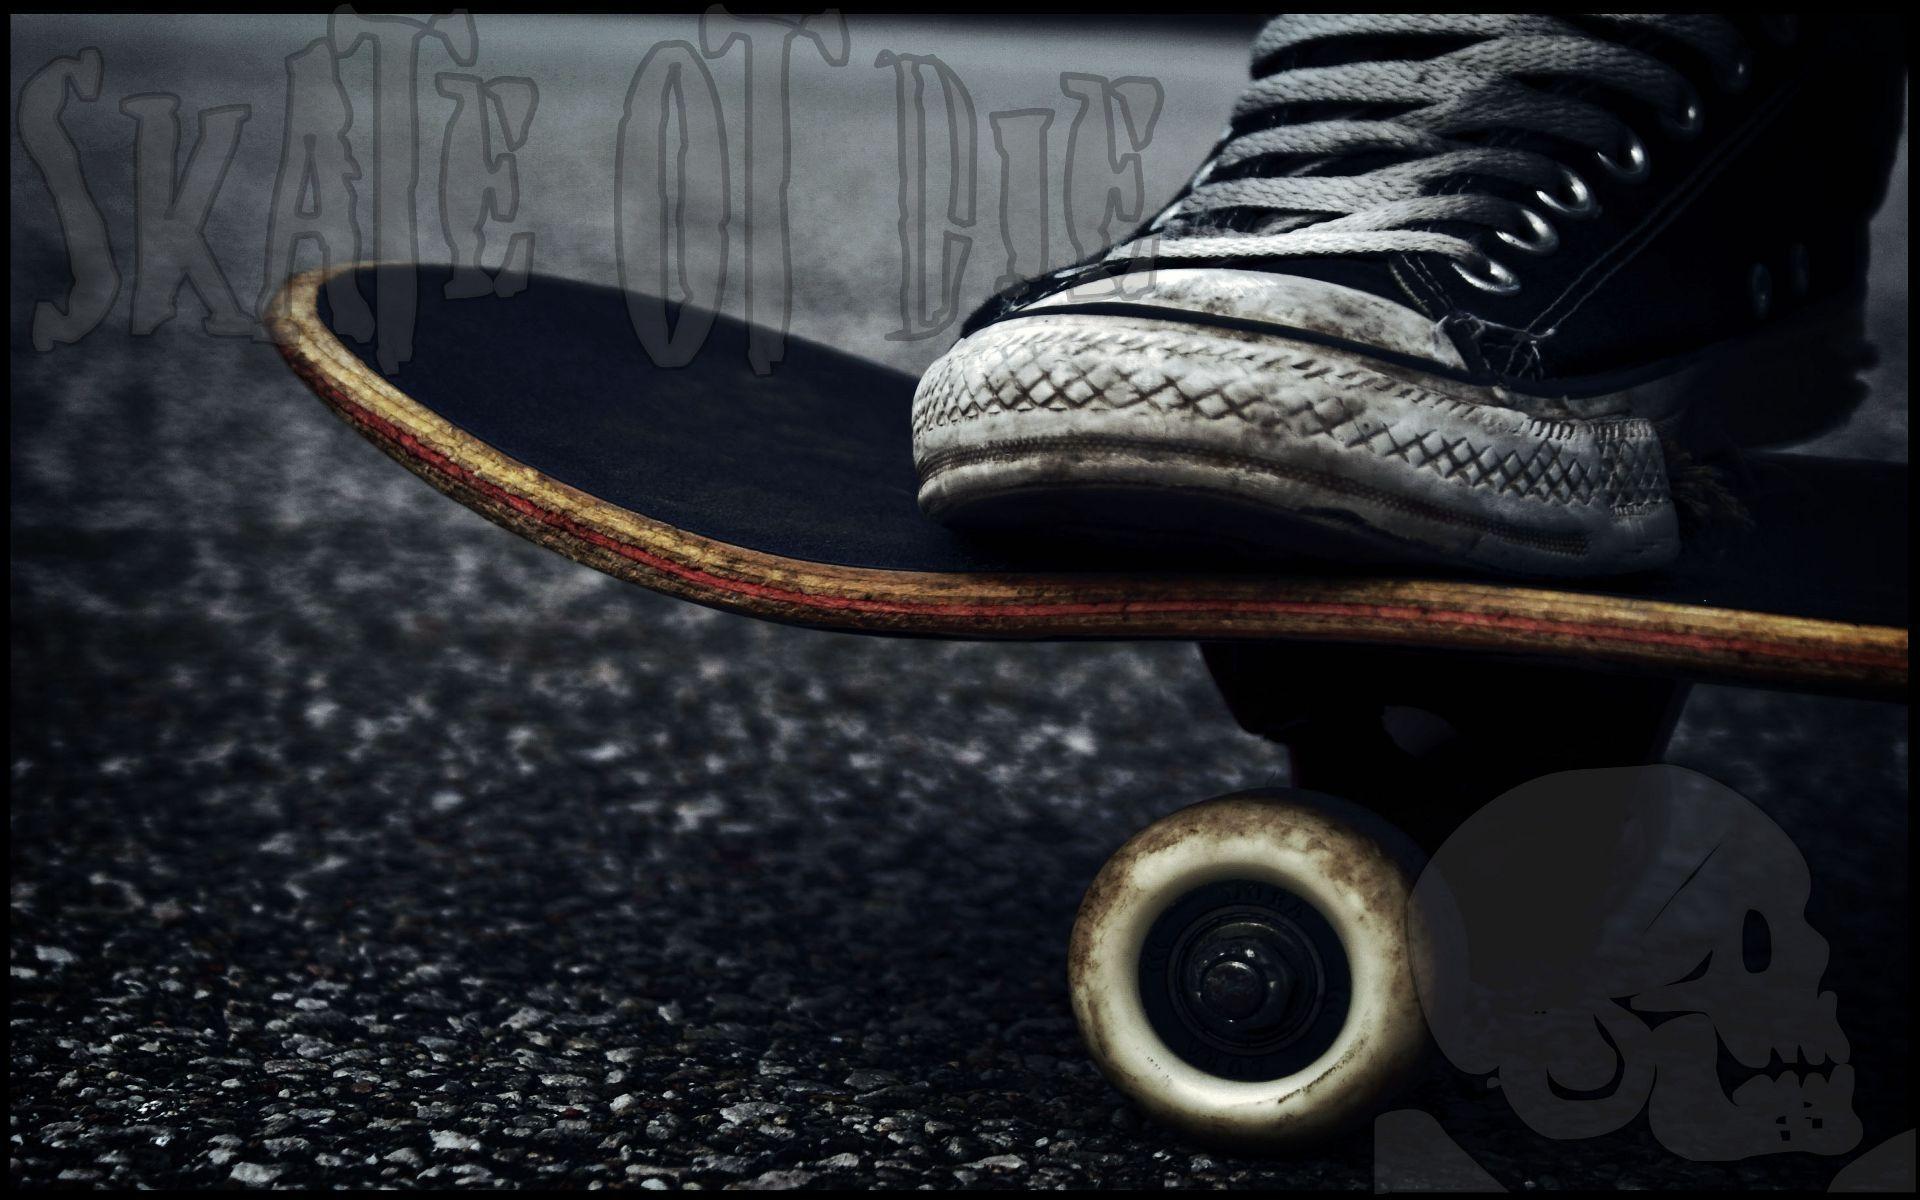 PHOTO IDEAS. Sneakers wallpaper, Skateboard, Element skateboards